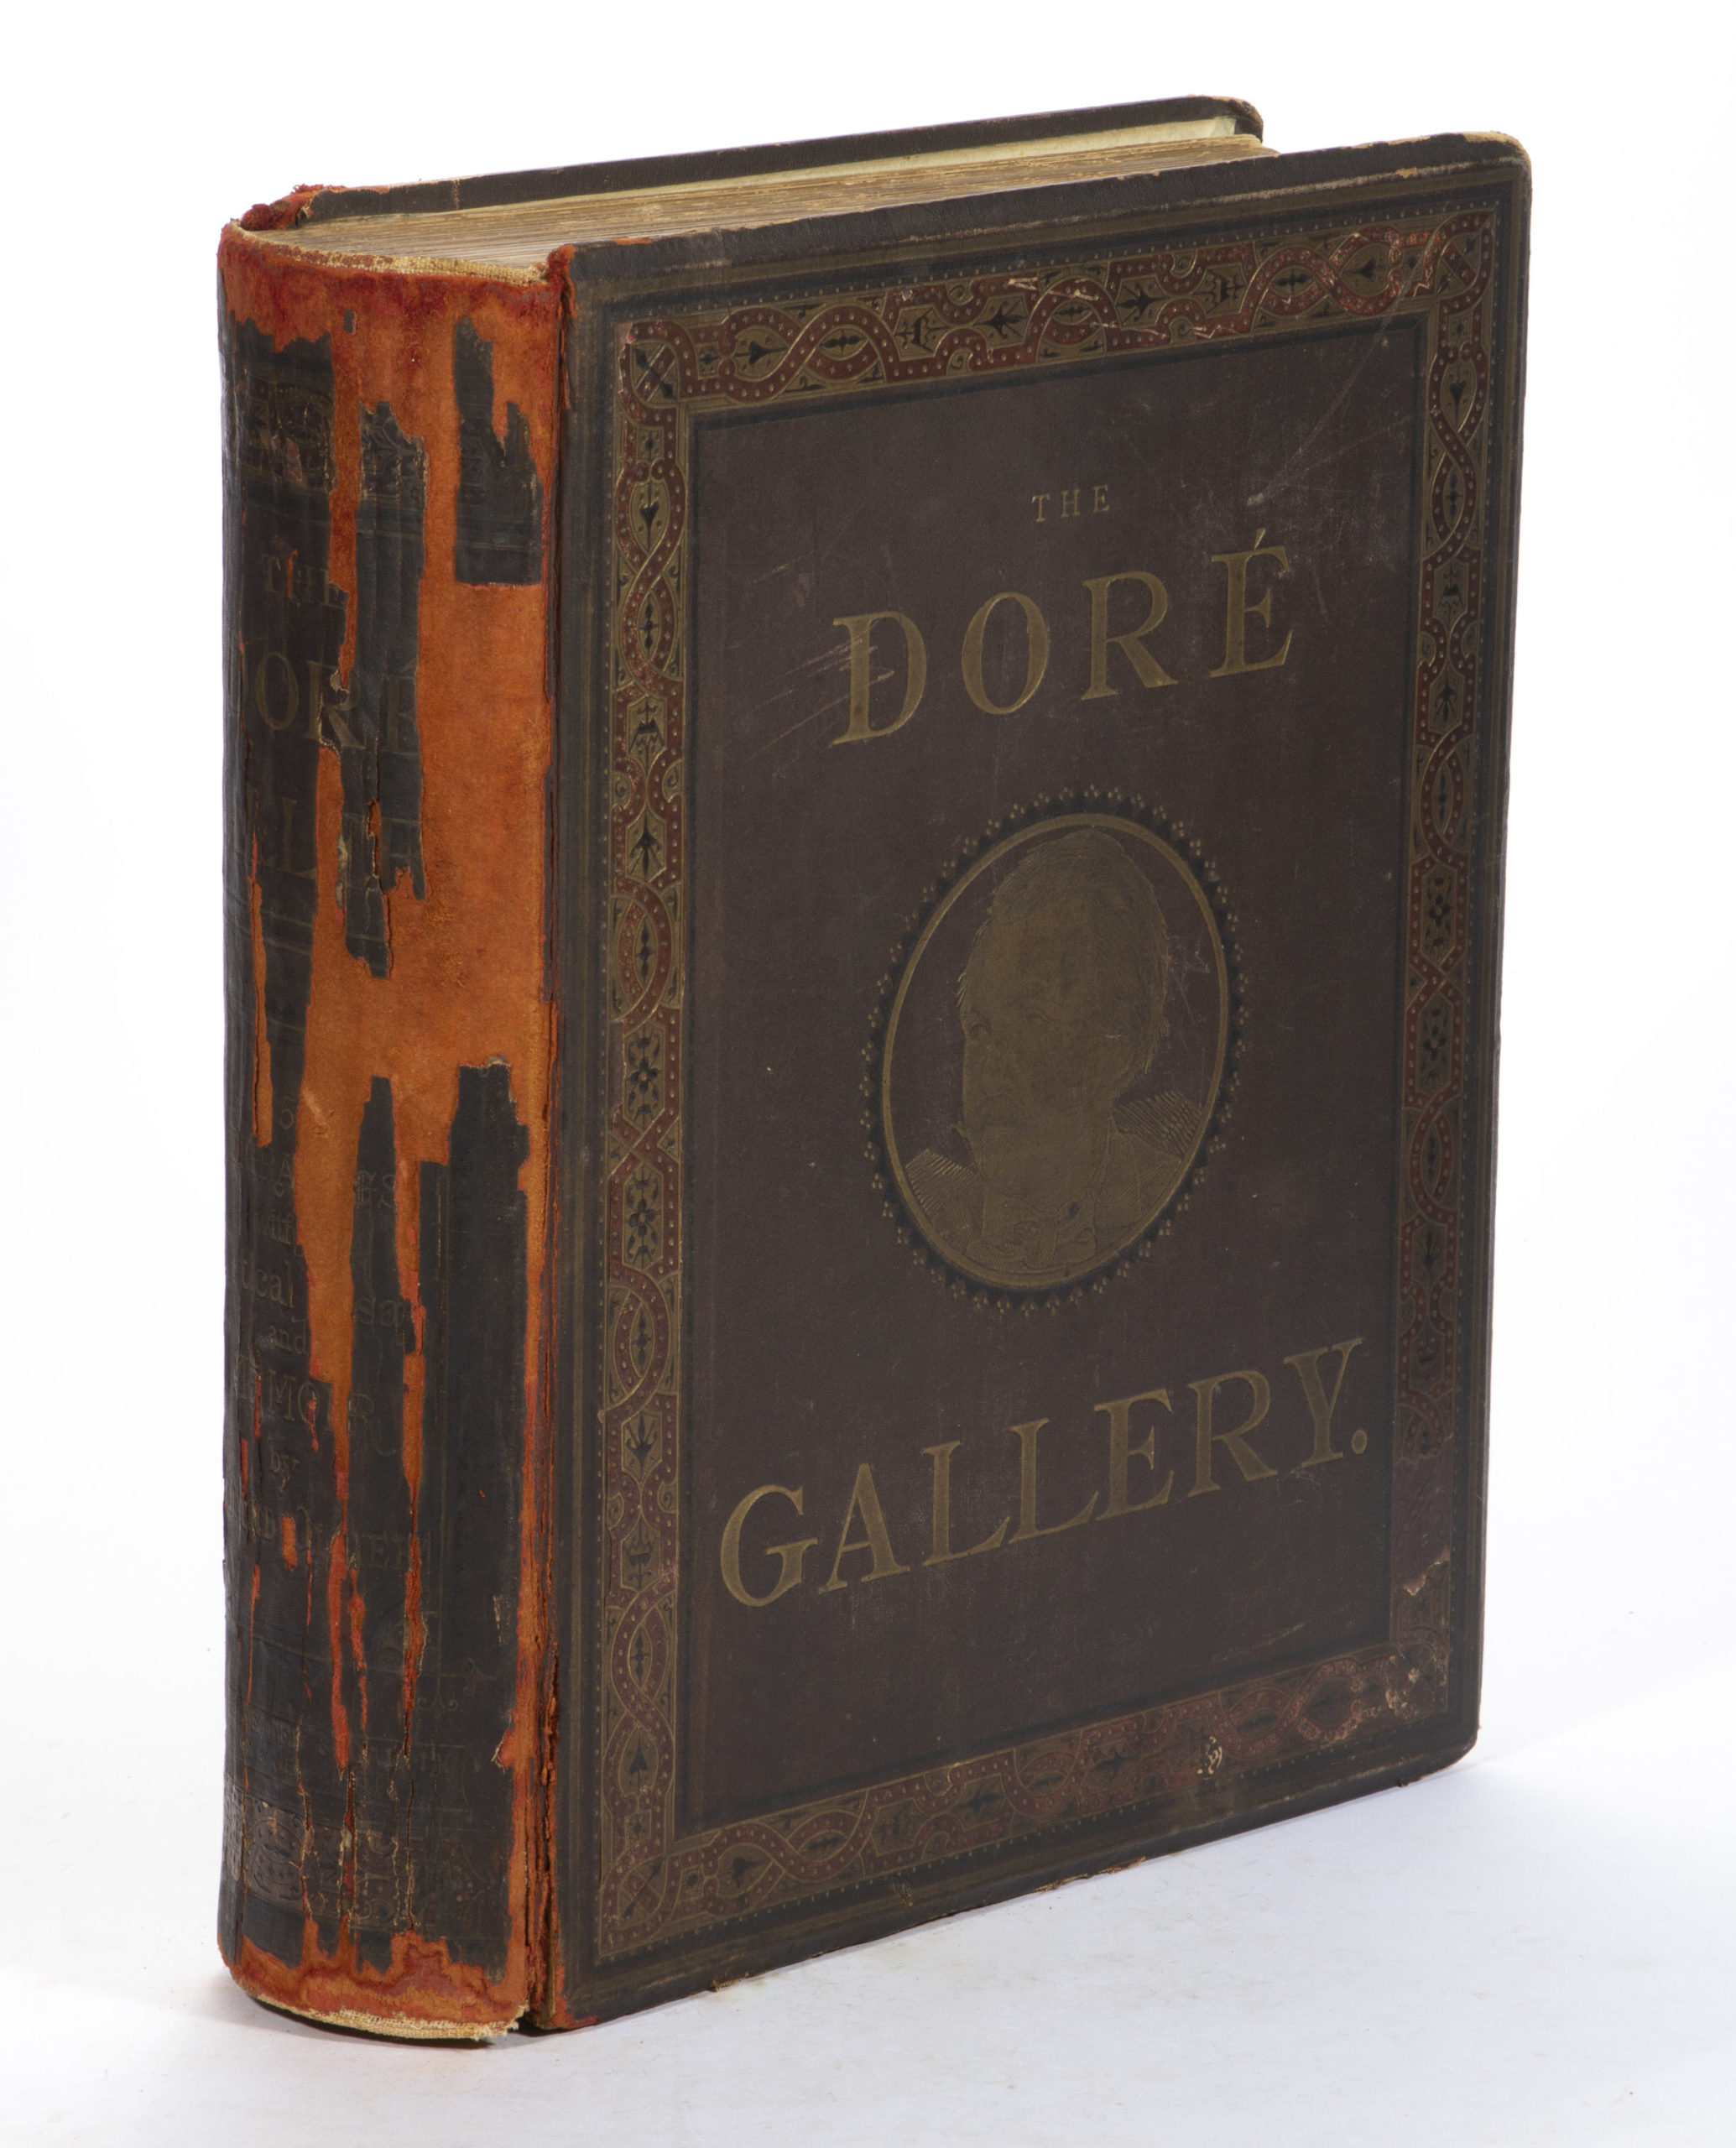 1870 “THE DORE GALLERY” BOOK,